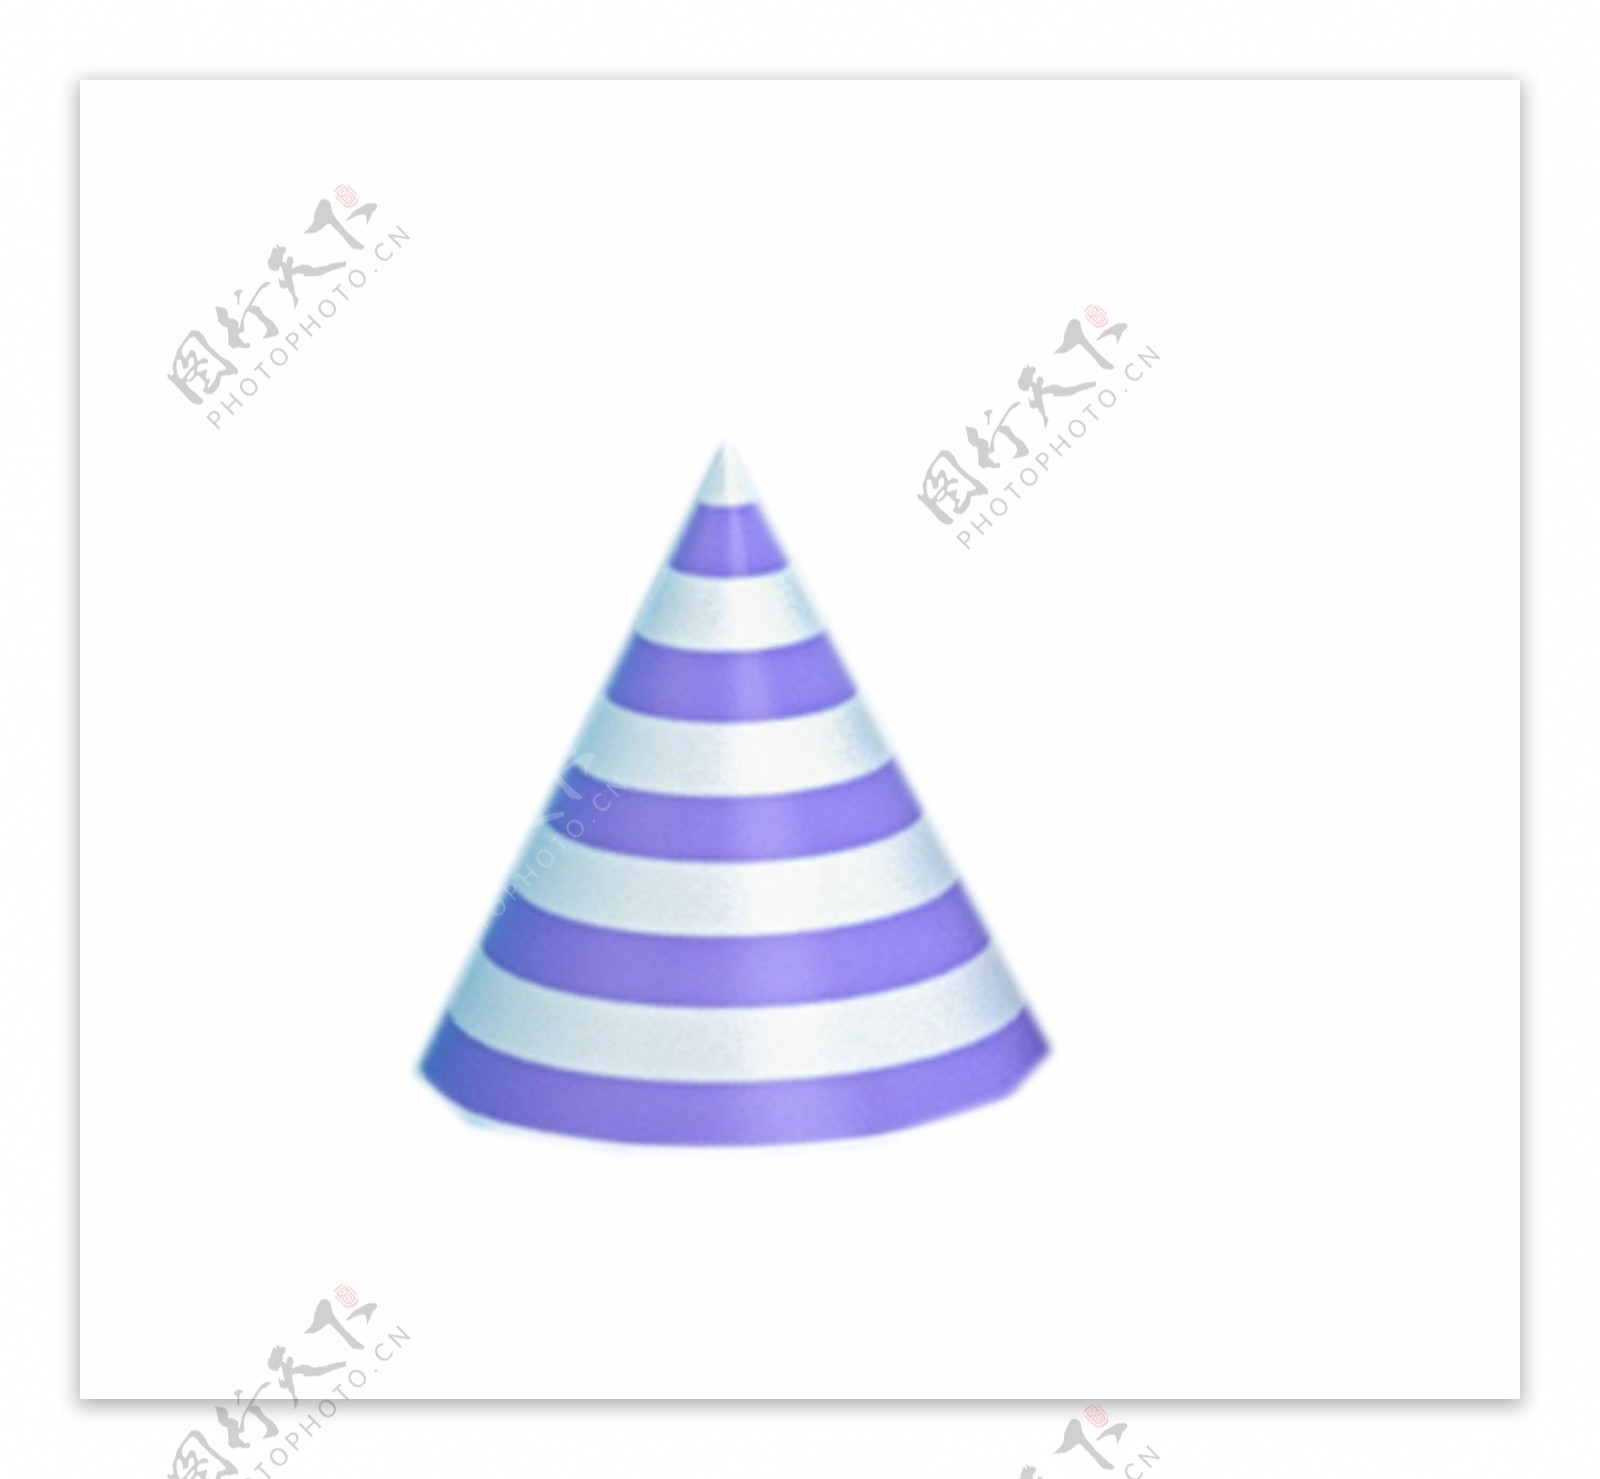 一个紫色的圆锥体